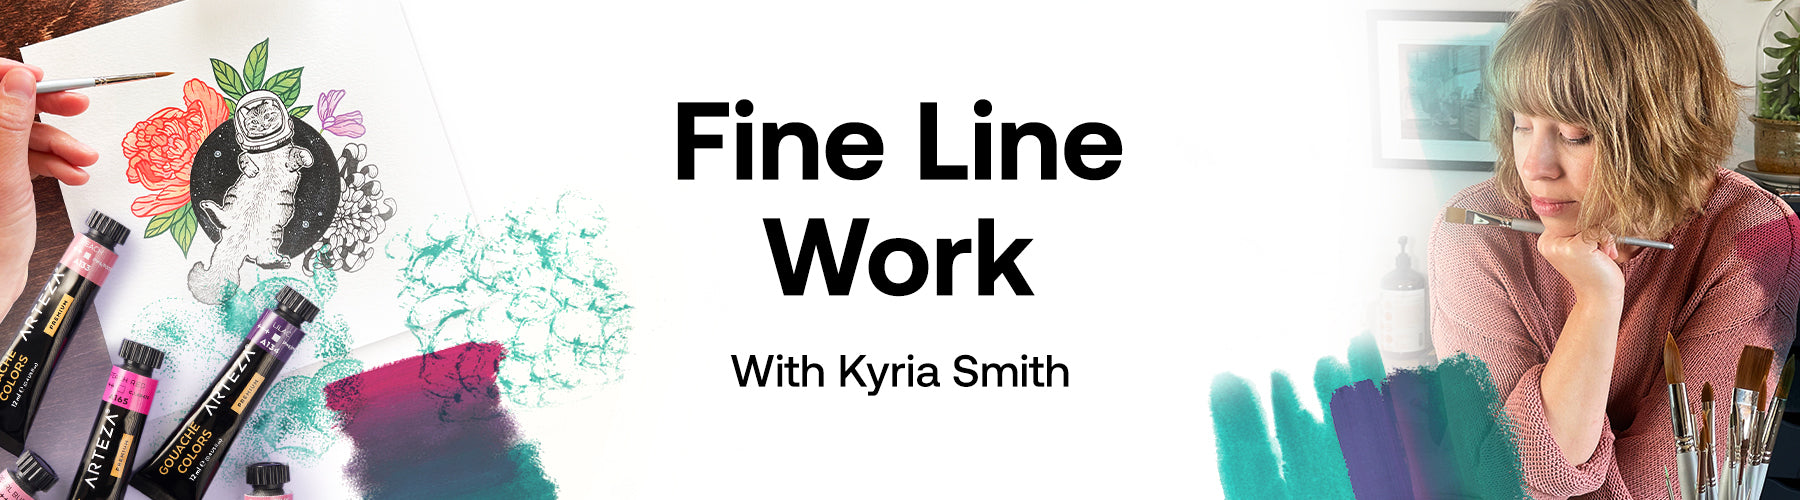 Fine Line Work with Kyria Smith